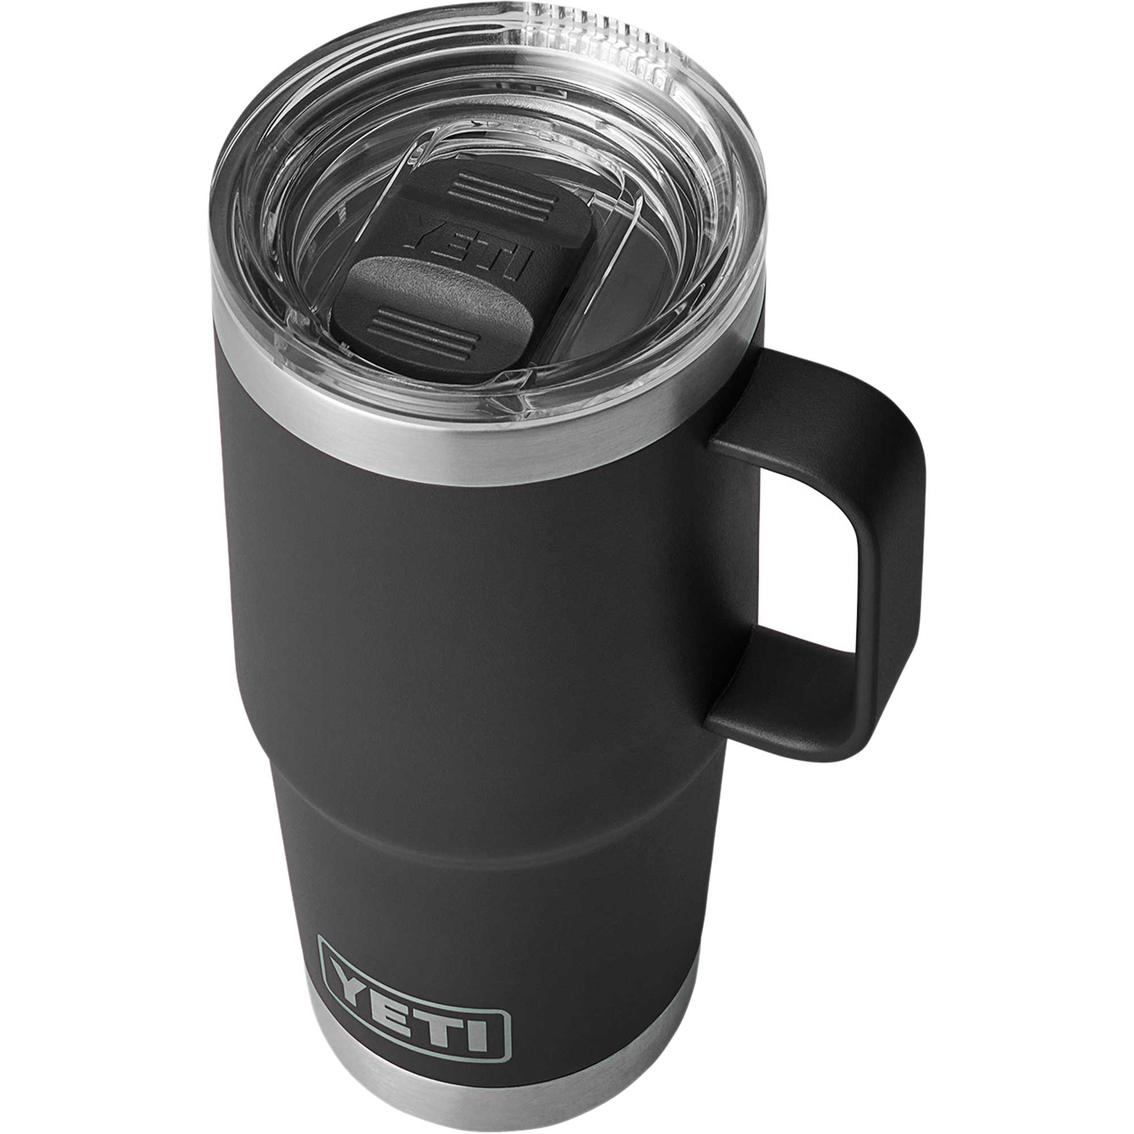 Yeti Rambler 20 oz. Travel Mug with Stronghold Lid - Image 3 of 3